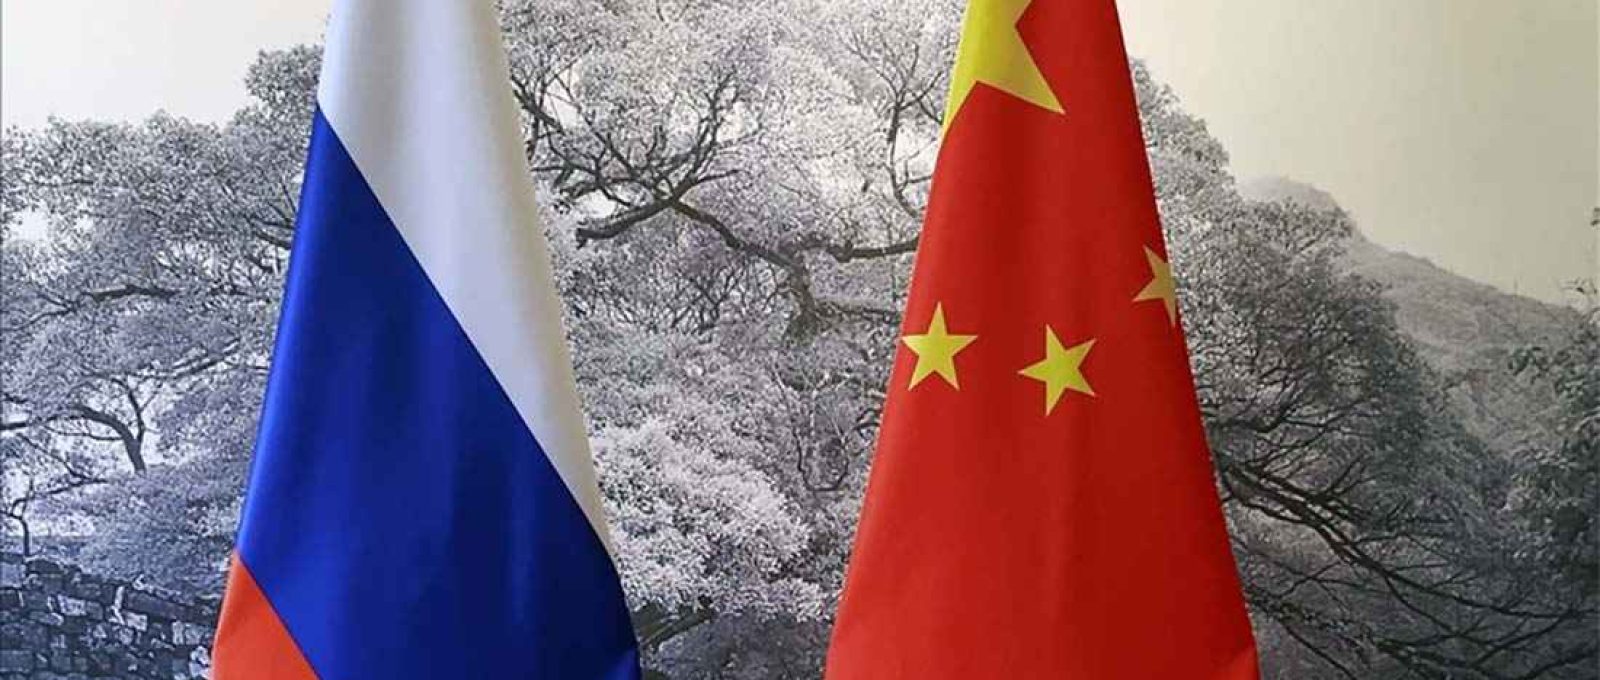 Ao remover a Rússia de sua posição de player global, o Ocidente elimina um contrapeso à China e garante a predominância do Império do Meio em um futuro não tão distante.